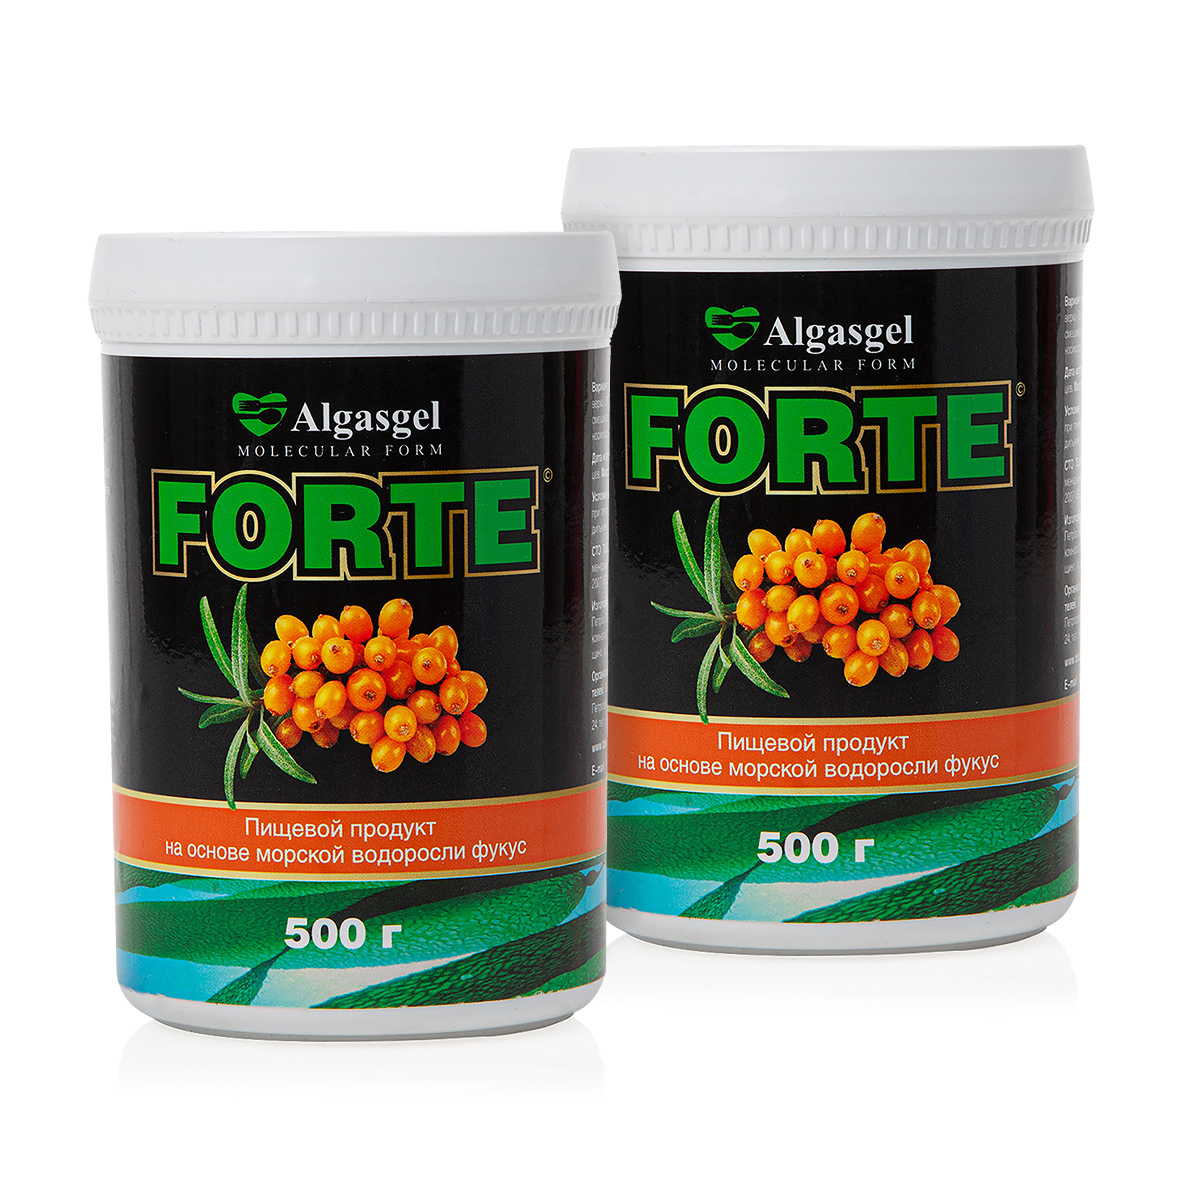 пищевой продукт algasgel vision 500 г Пищевой продукт Algasgel Forte (2 шт. по 500 г) + подарок (500 г)